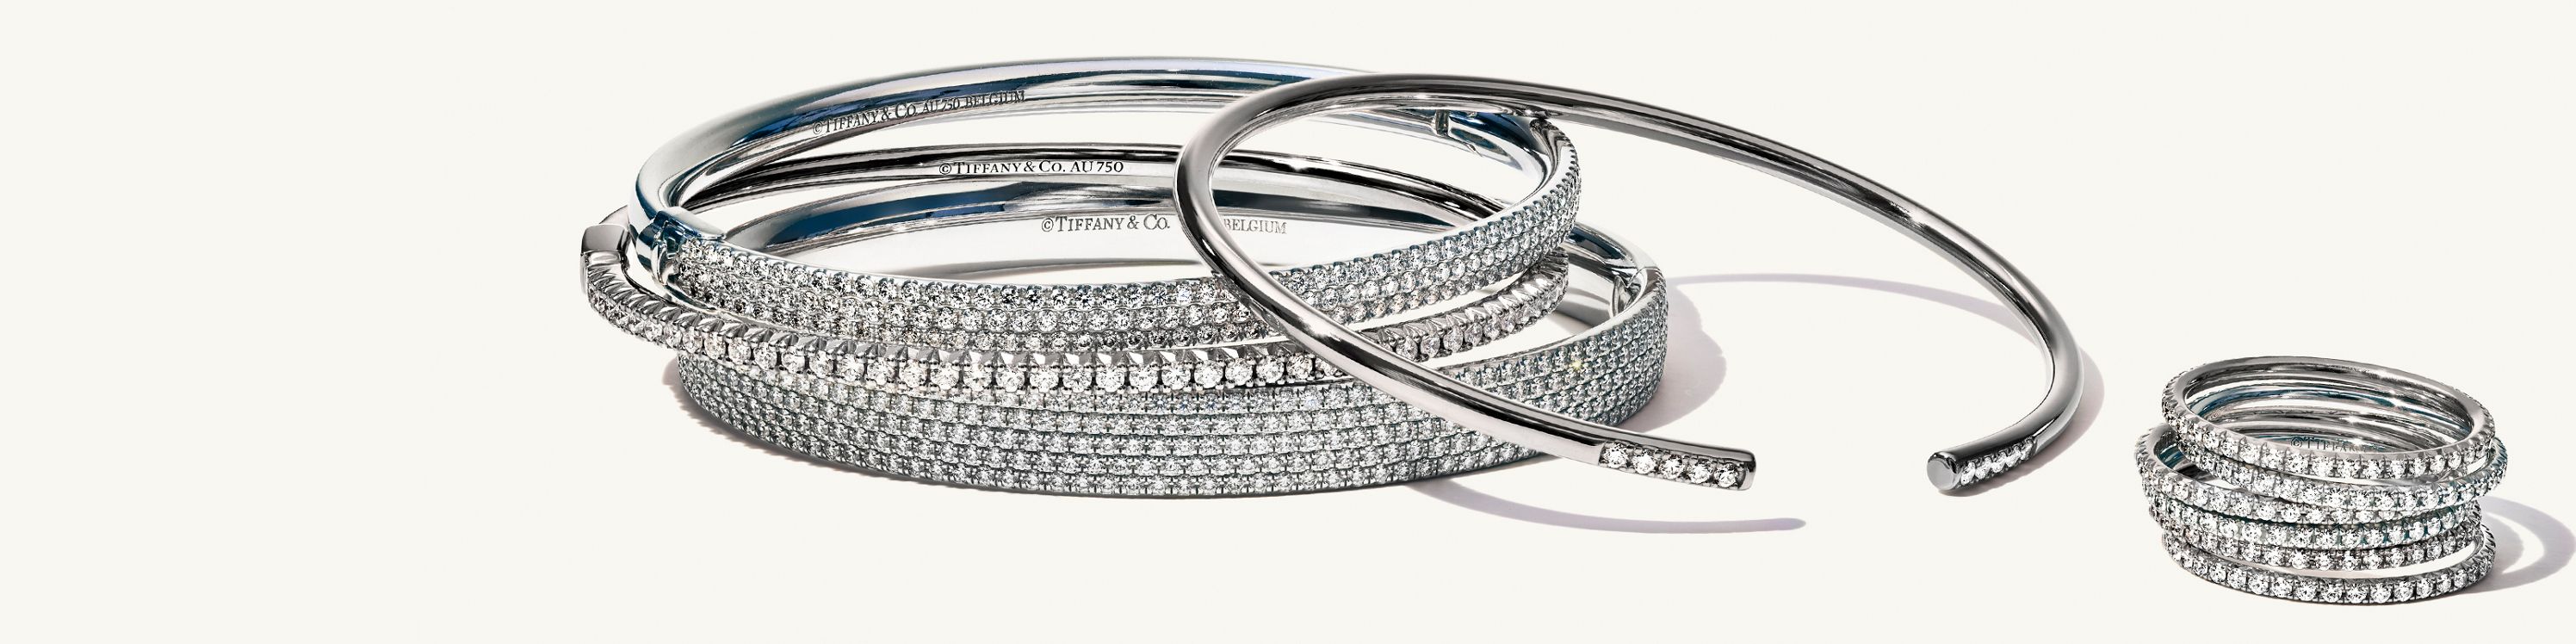 Y así Multiplicación Método Joyas de oro blanco | Tiffany & Co.